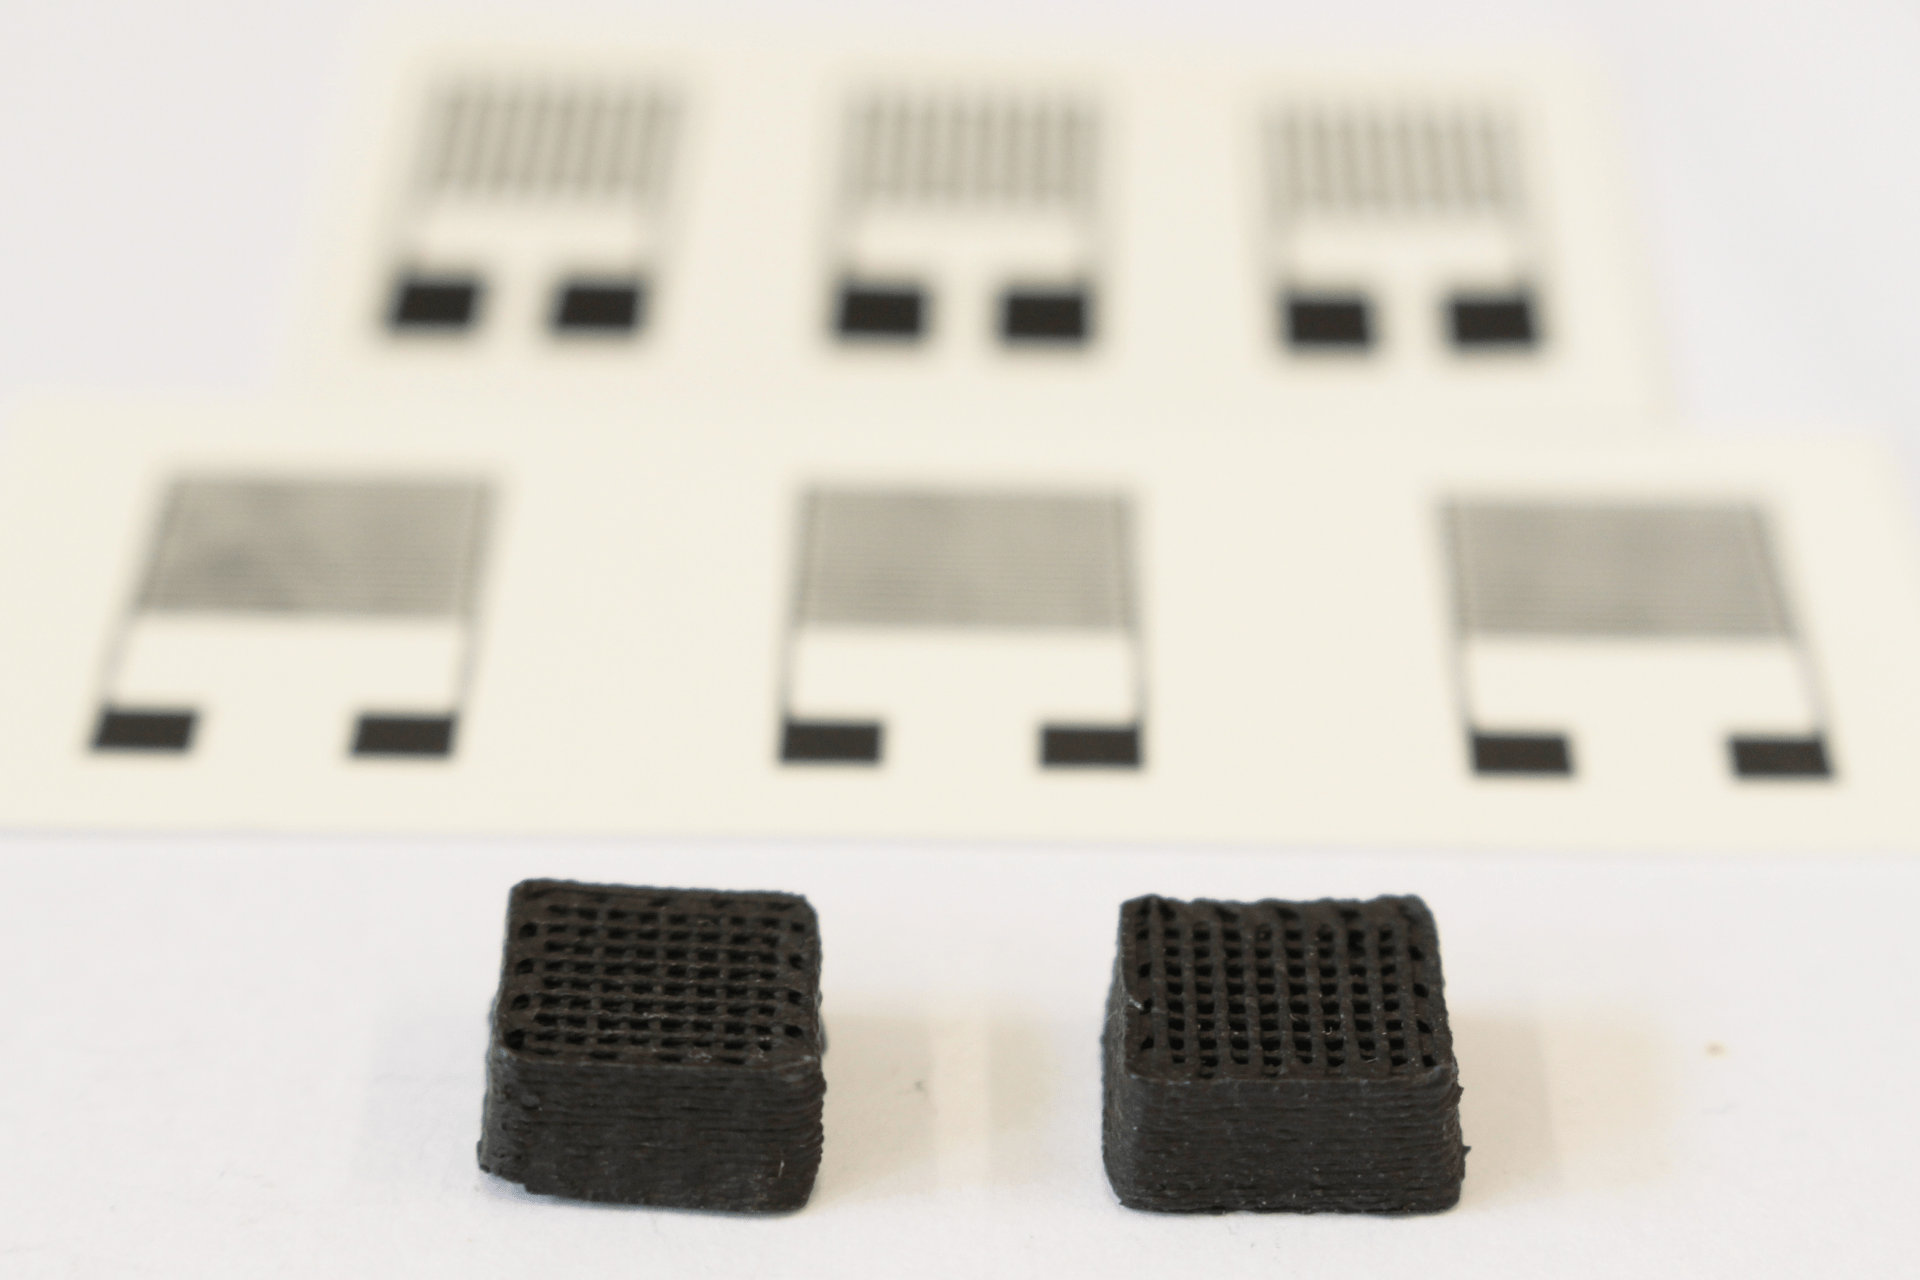 Un nuovo materiale per i circuiti stampati derivato dagli escrementi della cocciniglia: due cuboidi di prova larghi un centimetro realizzati con una stampante tridimensionale. I sensori elettronici stampati possono essere visti sullo sfondo (Foto: EMPA)